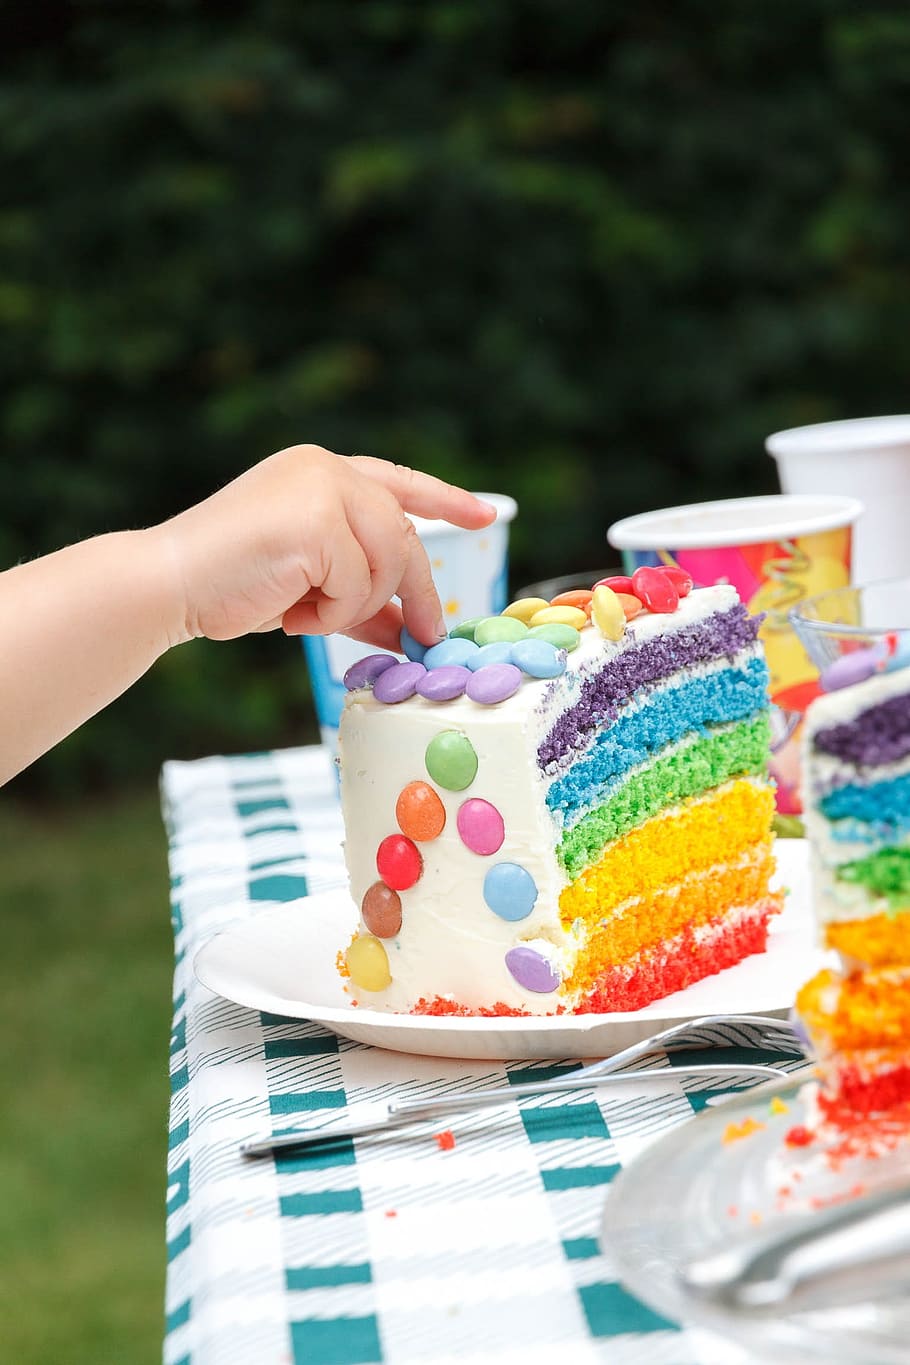 무지개 케이크, 생일, 케이크, 단, 축하, 생일 케이크, 양초, 어린이 생일, 맛있는, 빨간